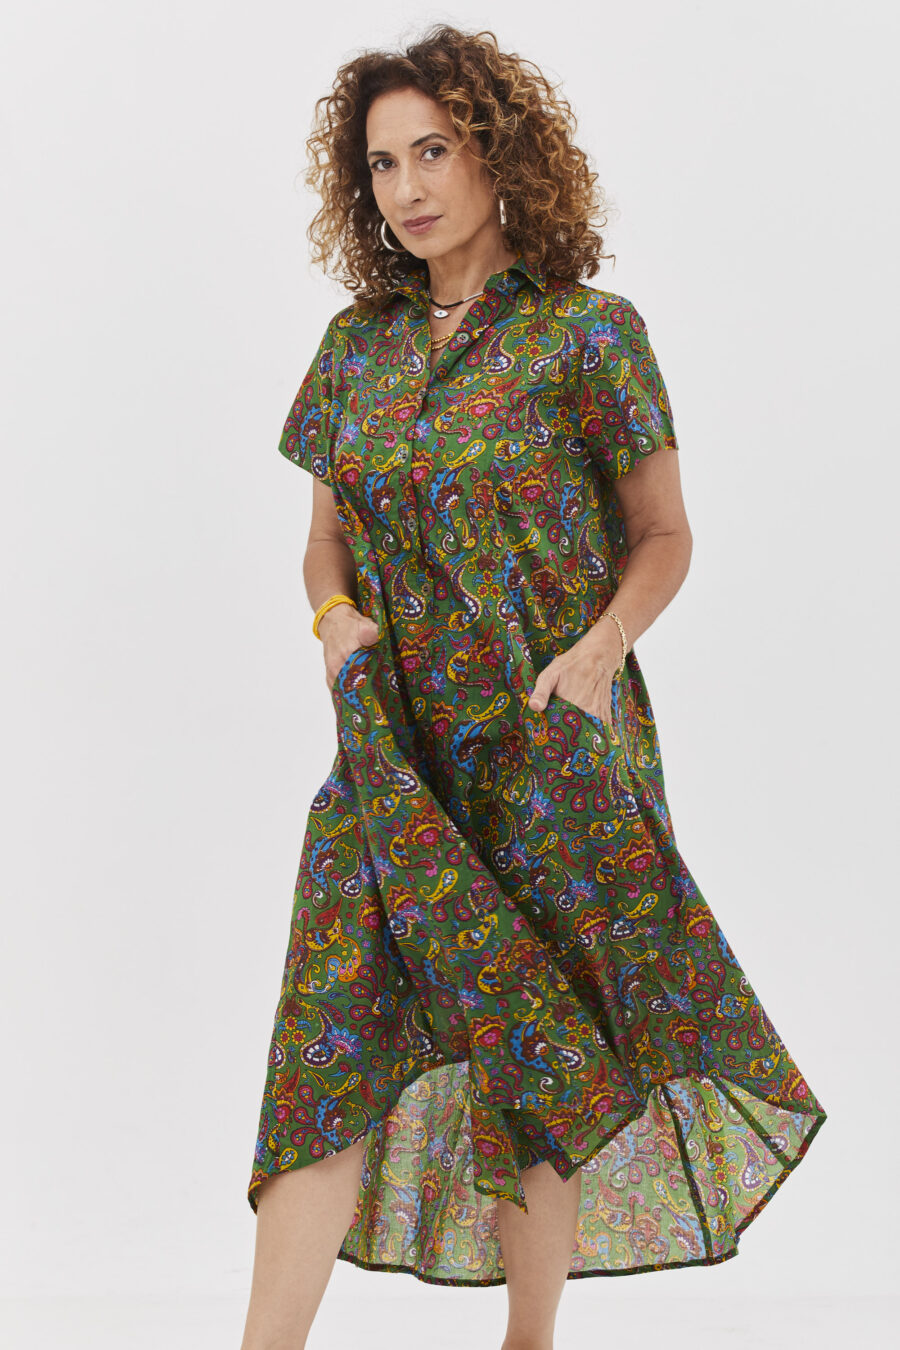 שמלת איה'לה | שמלת אוברסייז בעיצוב ייחודי - הדפס פייזלי ירוק, שמלה בצבע ירוק עם הדפס פייזלי צבעוני.